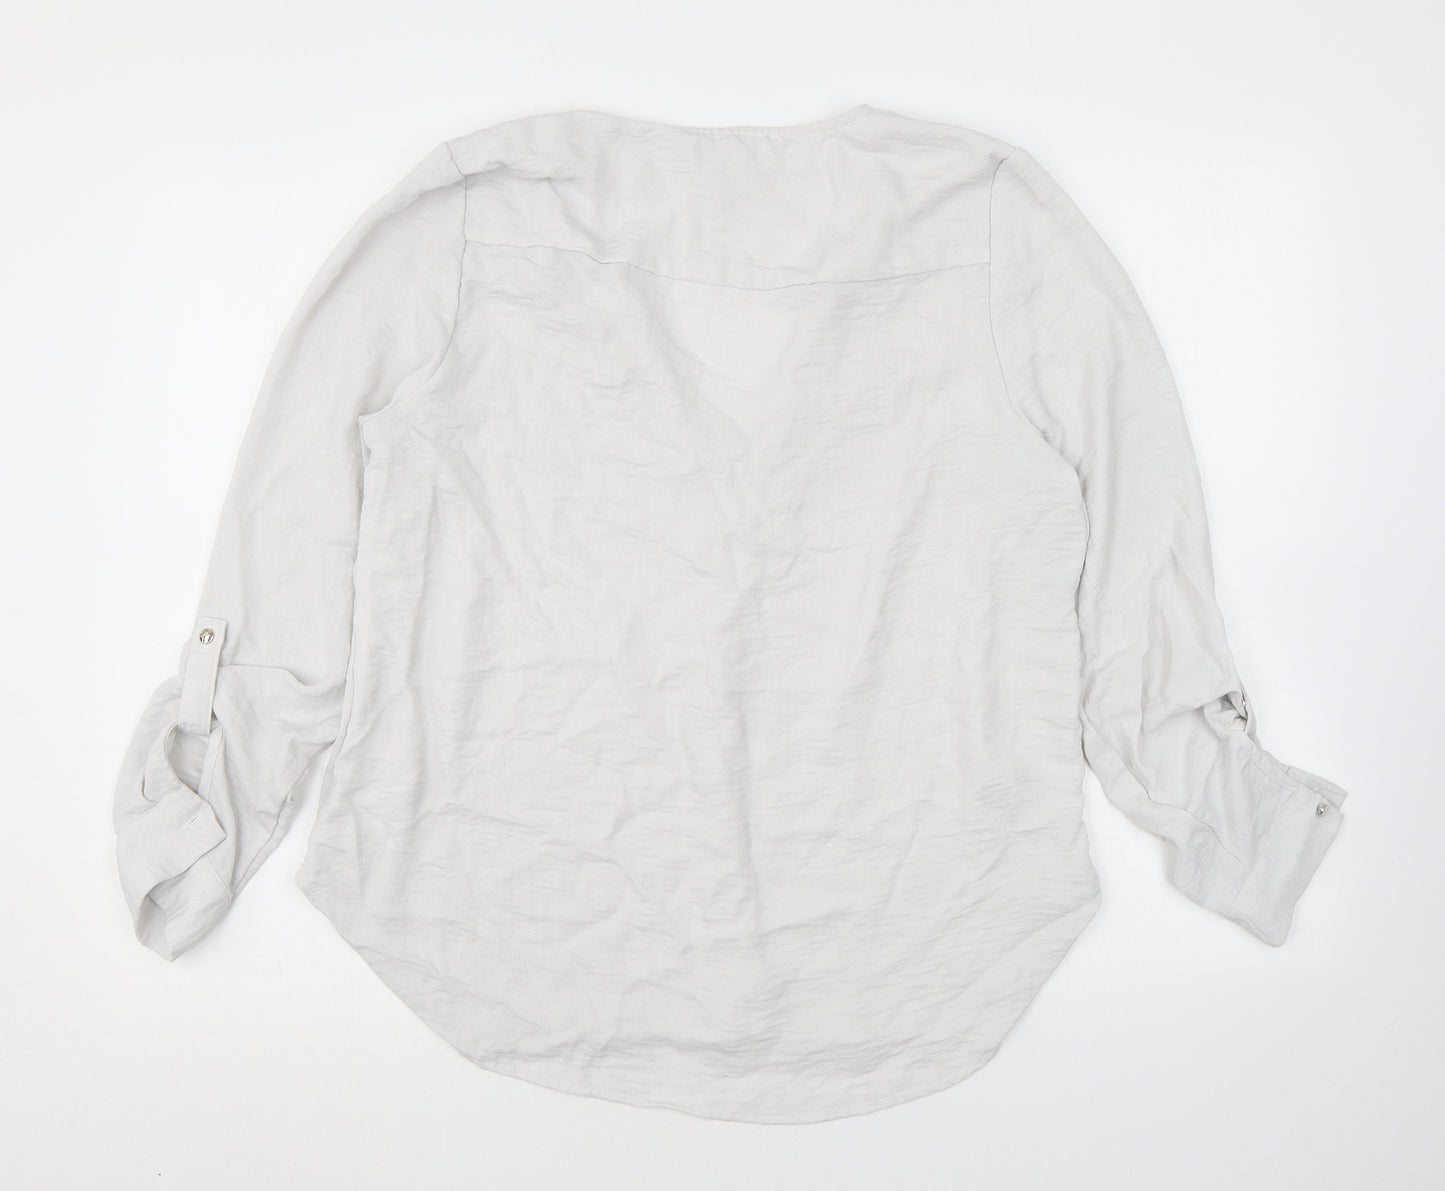 Apricot Womens Ivory Polyester Basic Blouse Size 12 V-Neck